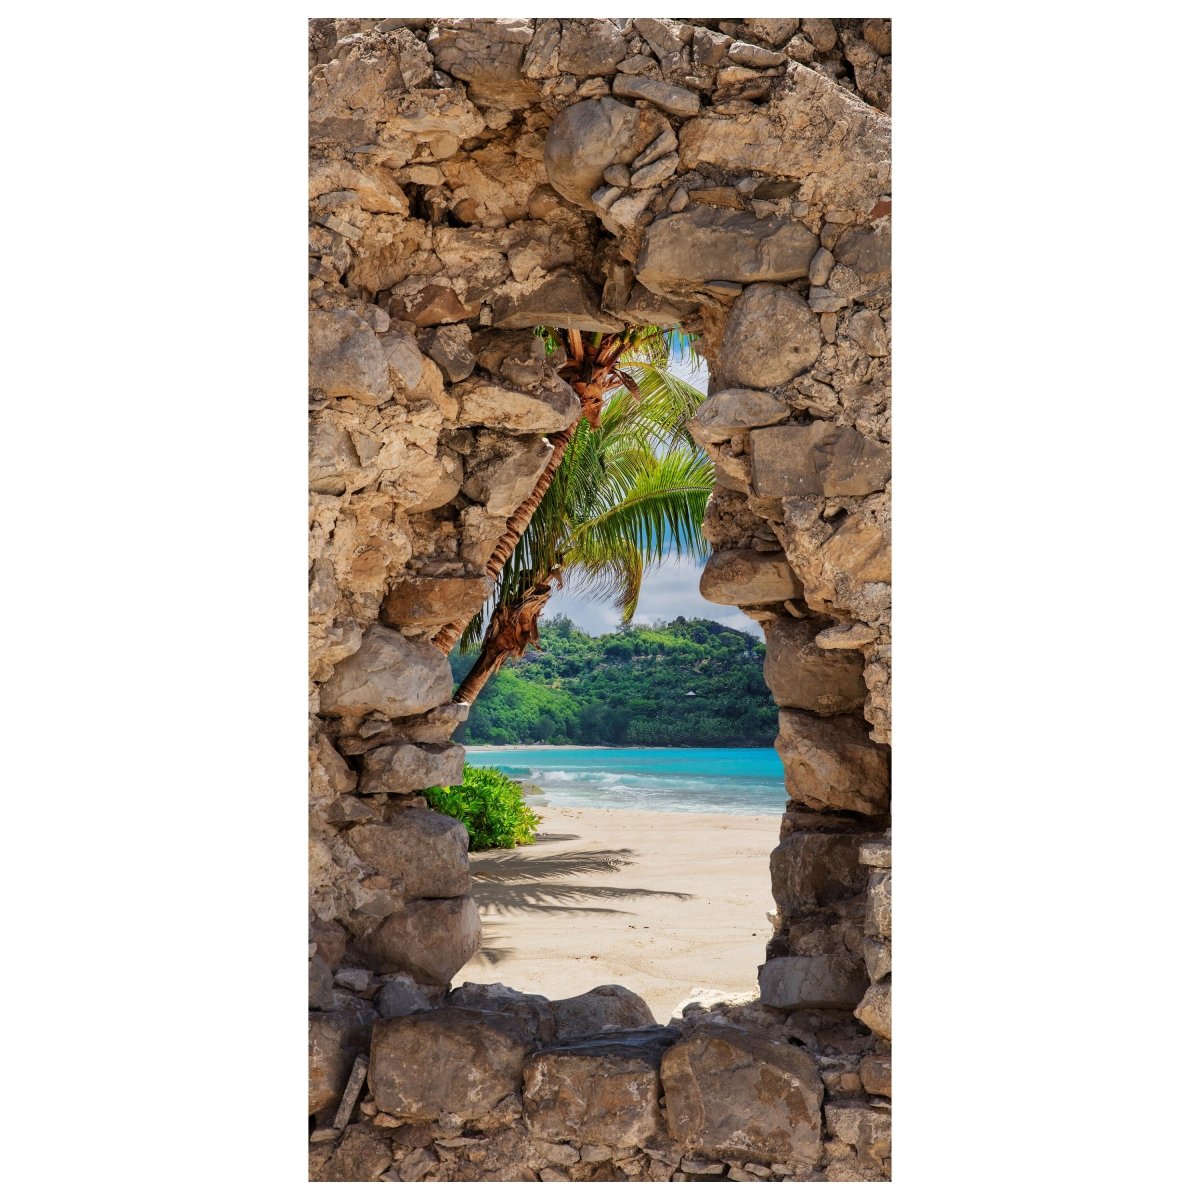 Türtapete 3D Steine, Palmen, Insel, Strand, Meer M1270 - Bild 2